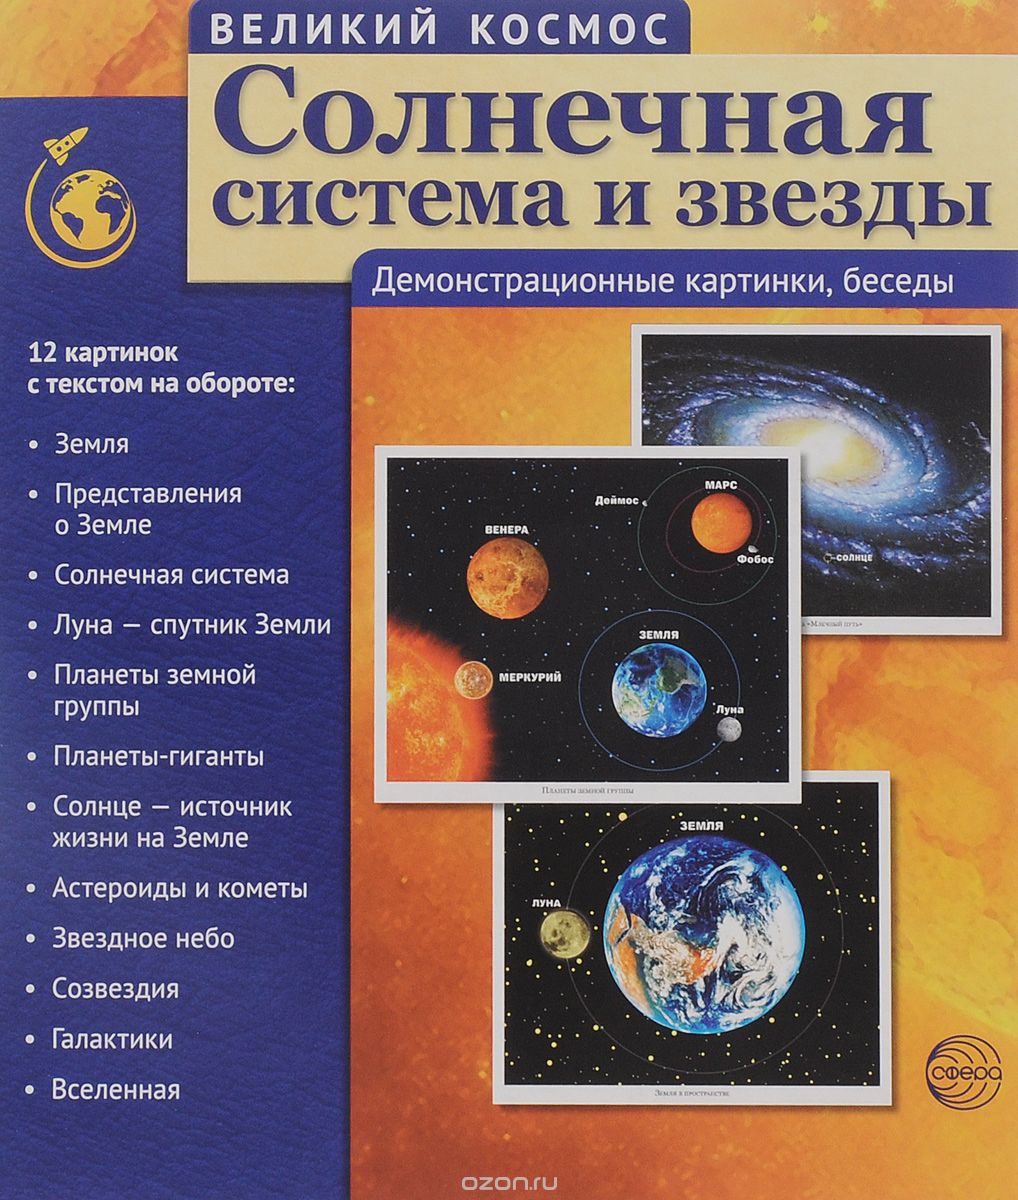 Скачать книгу "Великий Космос. Солнечная система и звезды. Демонстрационные картинки (набор из 12 карточек), Т. В. Цветкова"